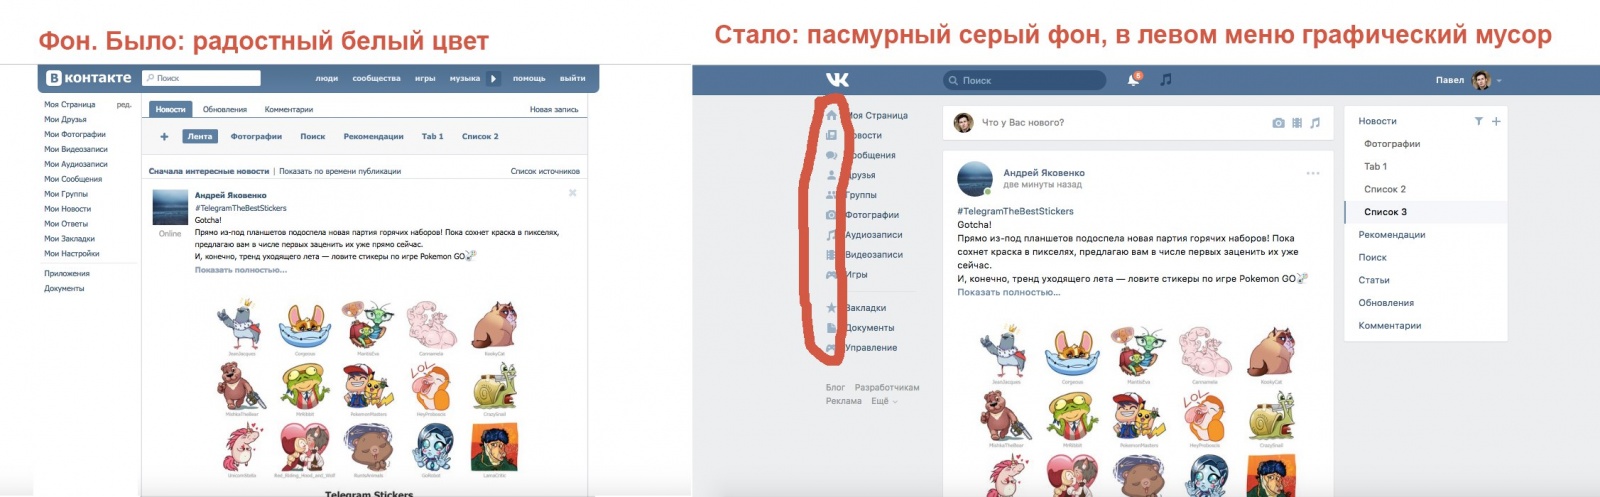 Павел Дуров прокомментировал редизайн «ВКонтакте» - 7